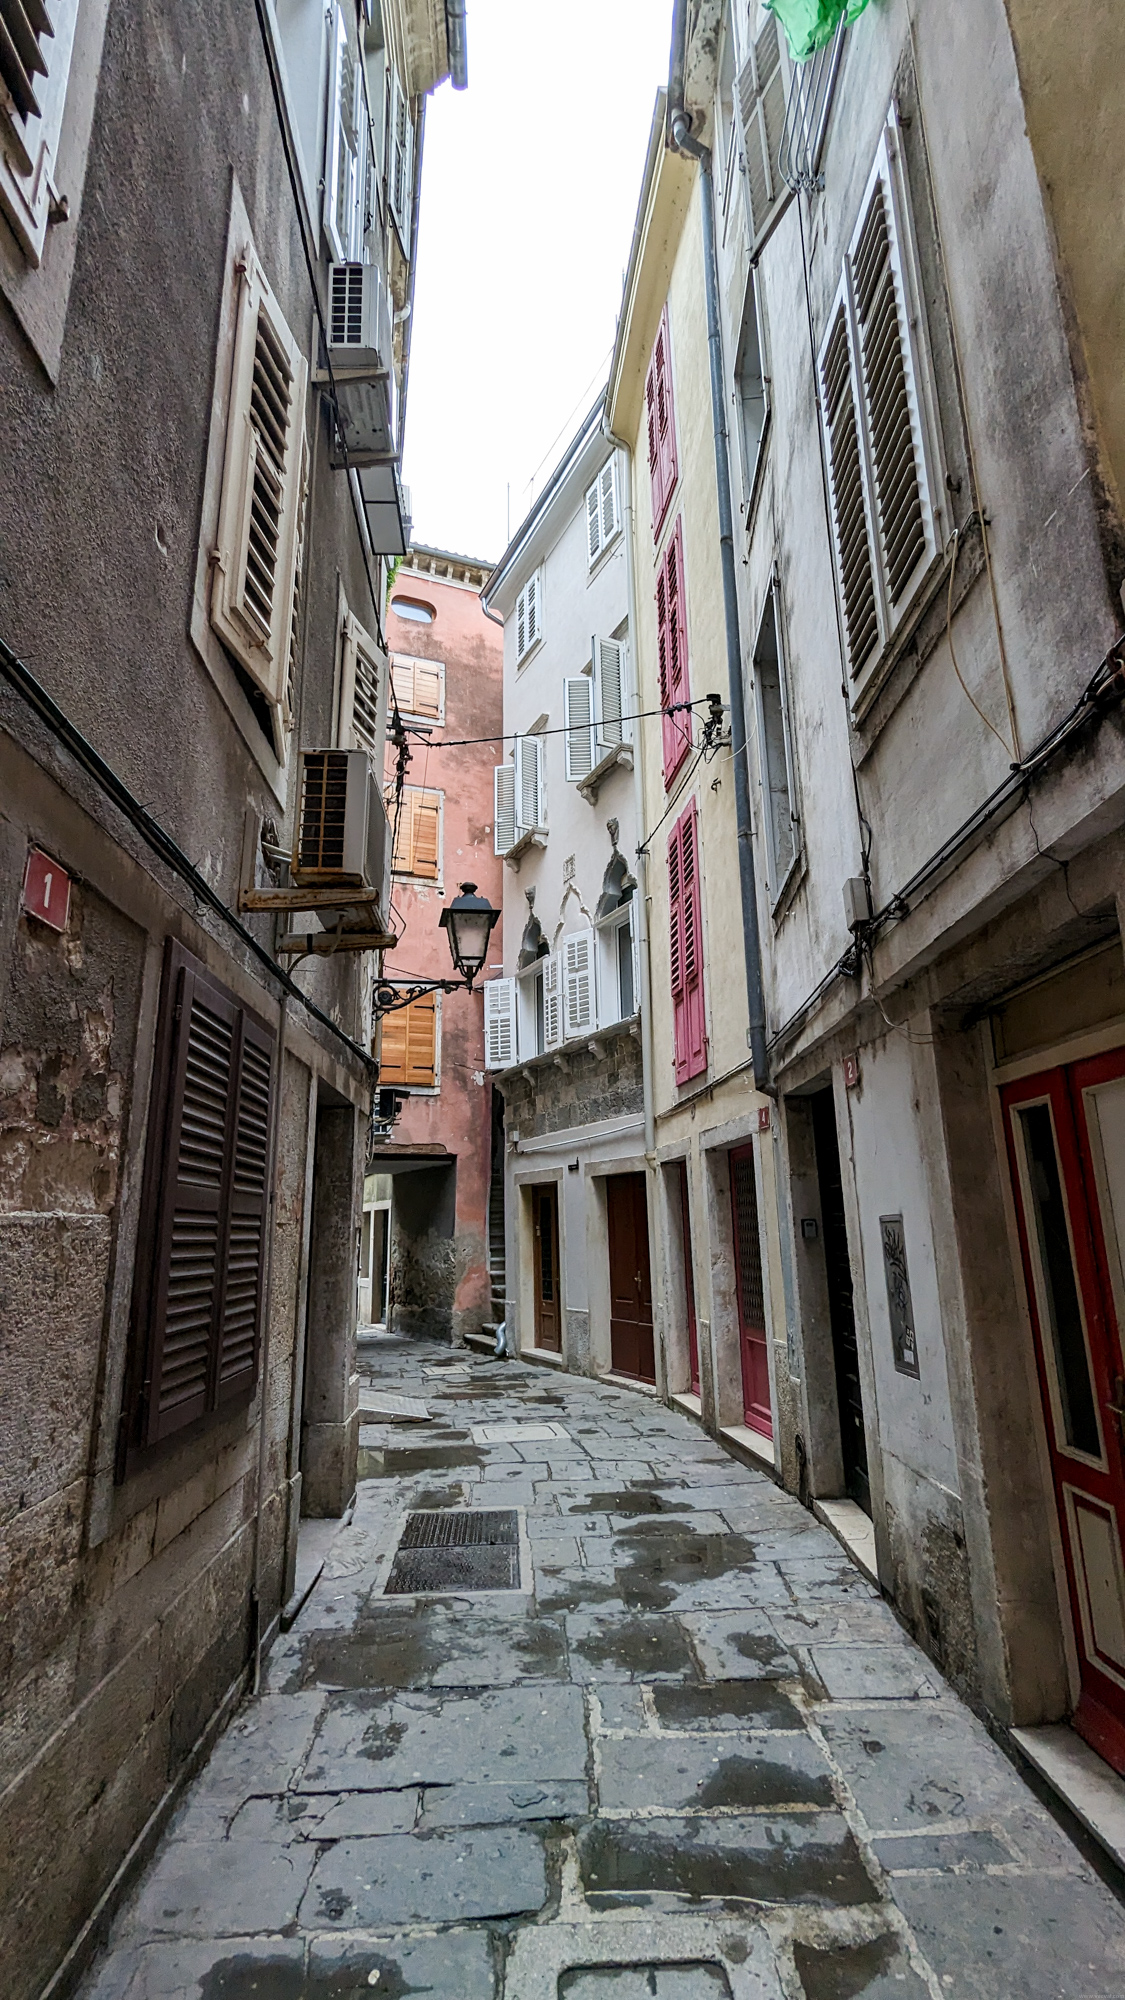 Úzke uličky pripomínajú historický talianský vplyv a architektúru.